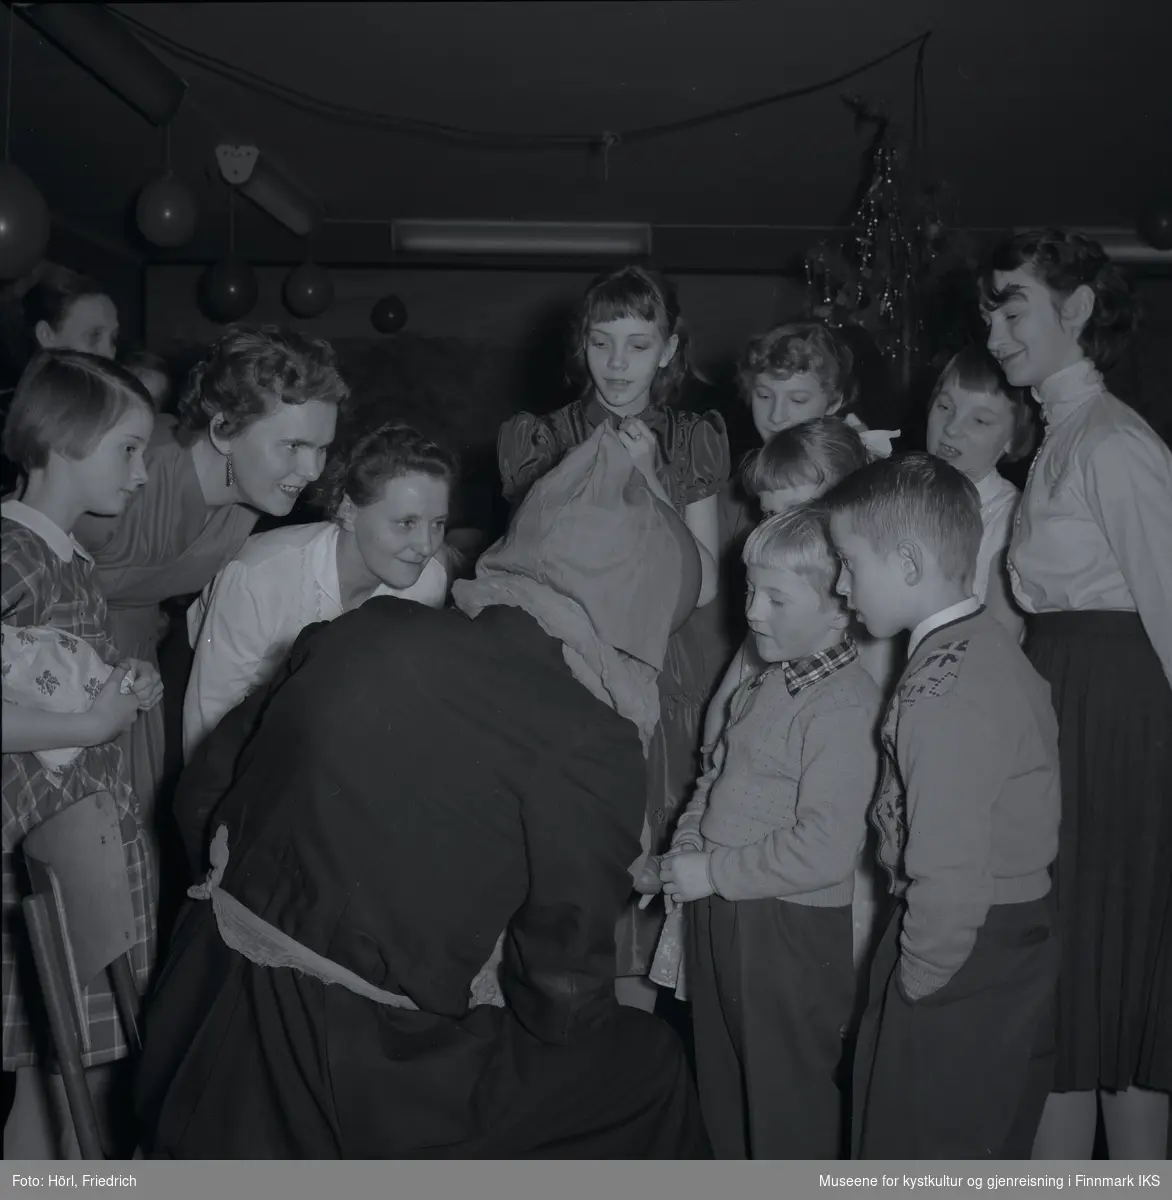 Julenissen besøker juletrefesten i den katolske menigheten i Hammerfest i 1957. Nærmest julenissen står det to gutter. En av dem ser ut som om han sier opp en dikt eller noe lignende for å få en gave. Dette er Terje Trondsen. De voksne kvinner ser på og er tydelig glade, spente og opprømte. Jenta til venstre i bildet holder sin presang i armen allerede. I bakgrunnen ser man juletreet og luftballonger.
Noen av de avbildete voksne er Ellionore Eriksen og Gerd Trondsen.